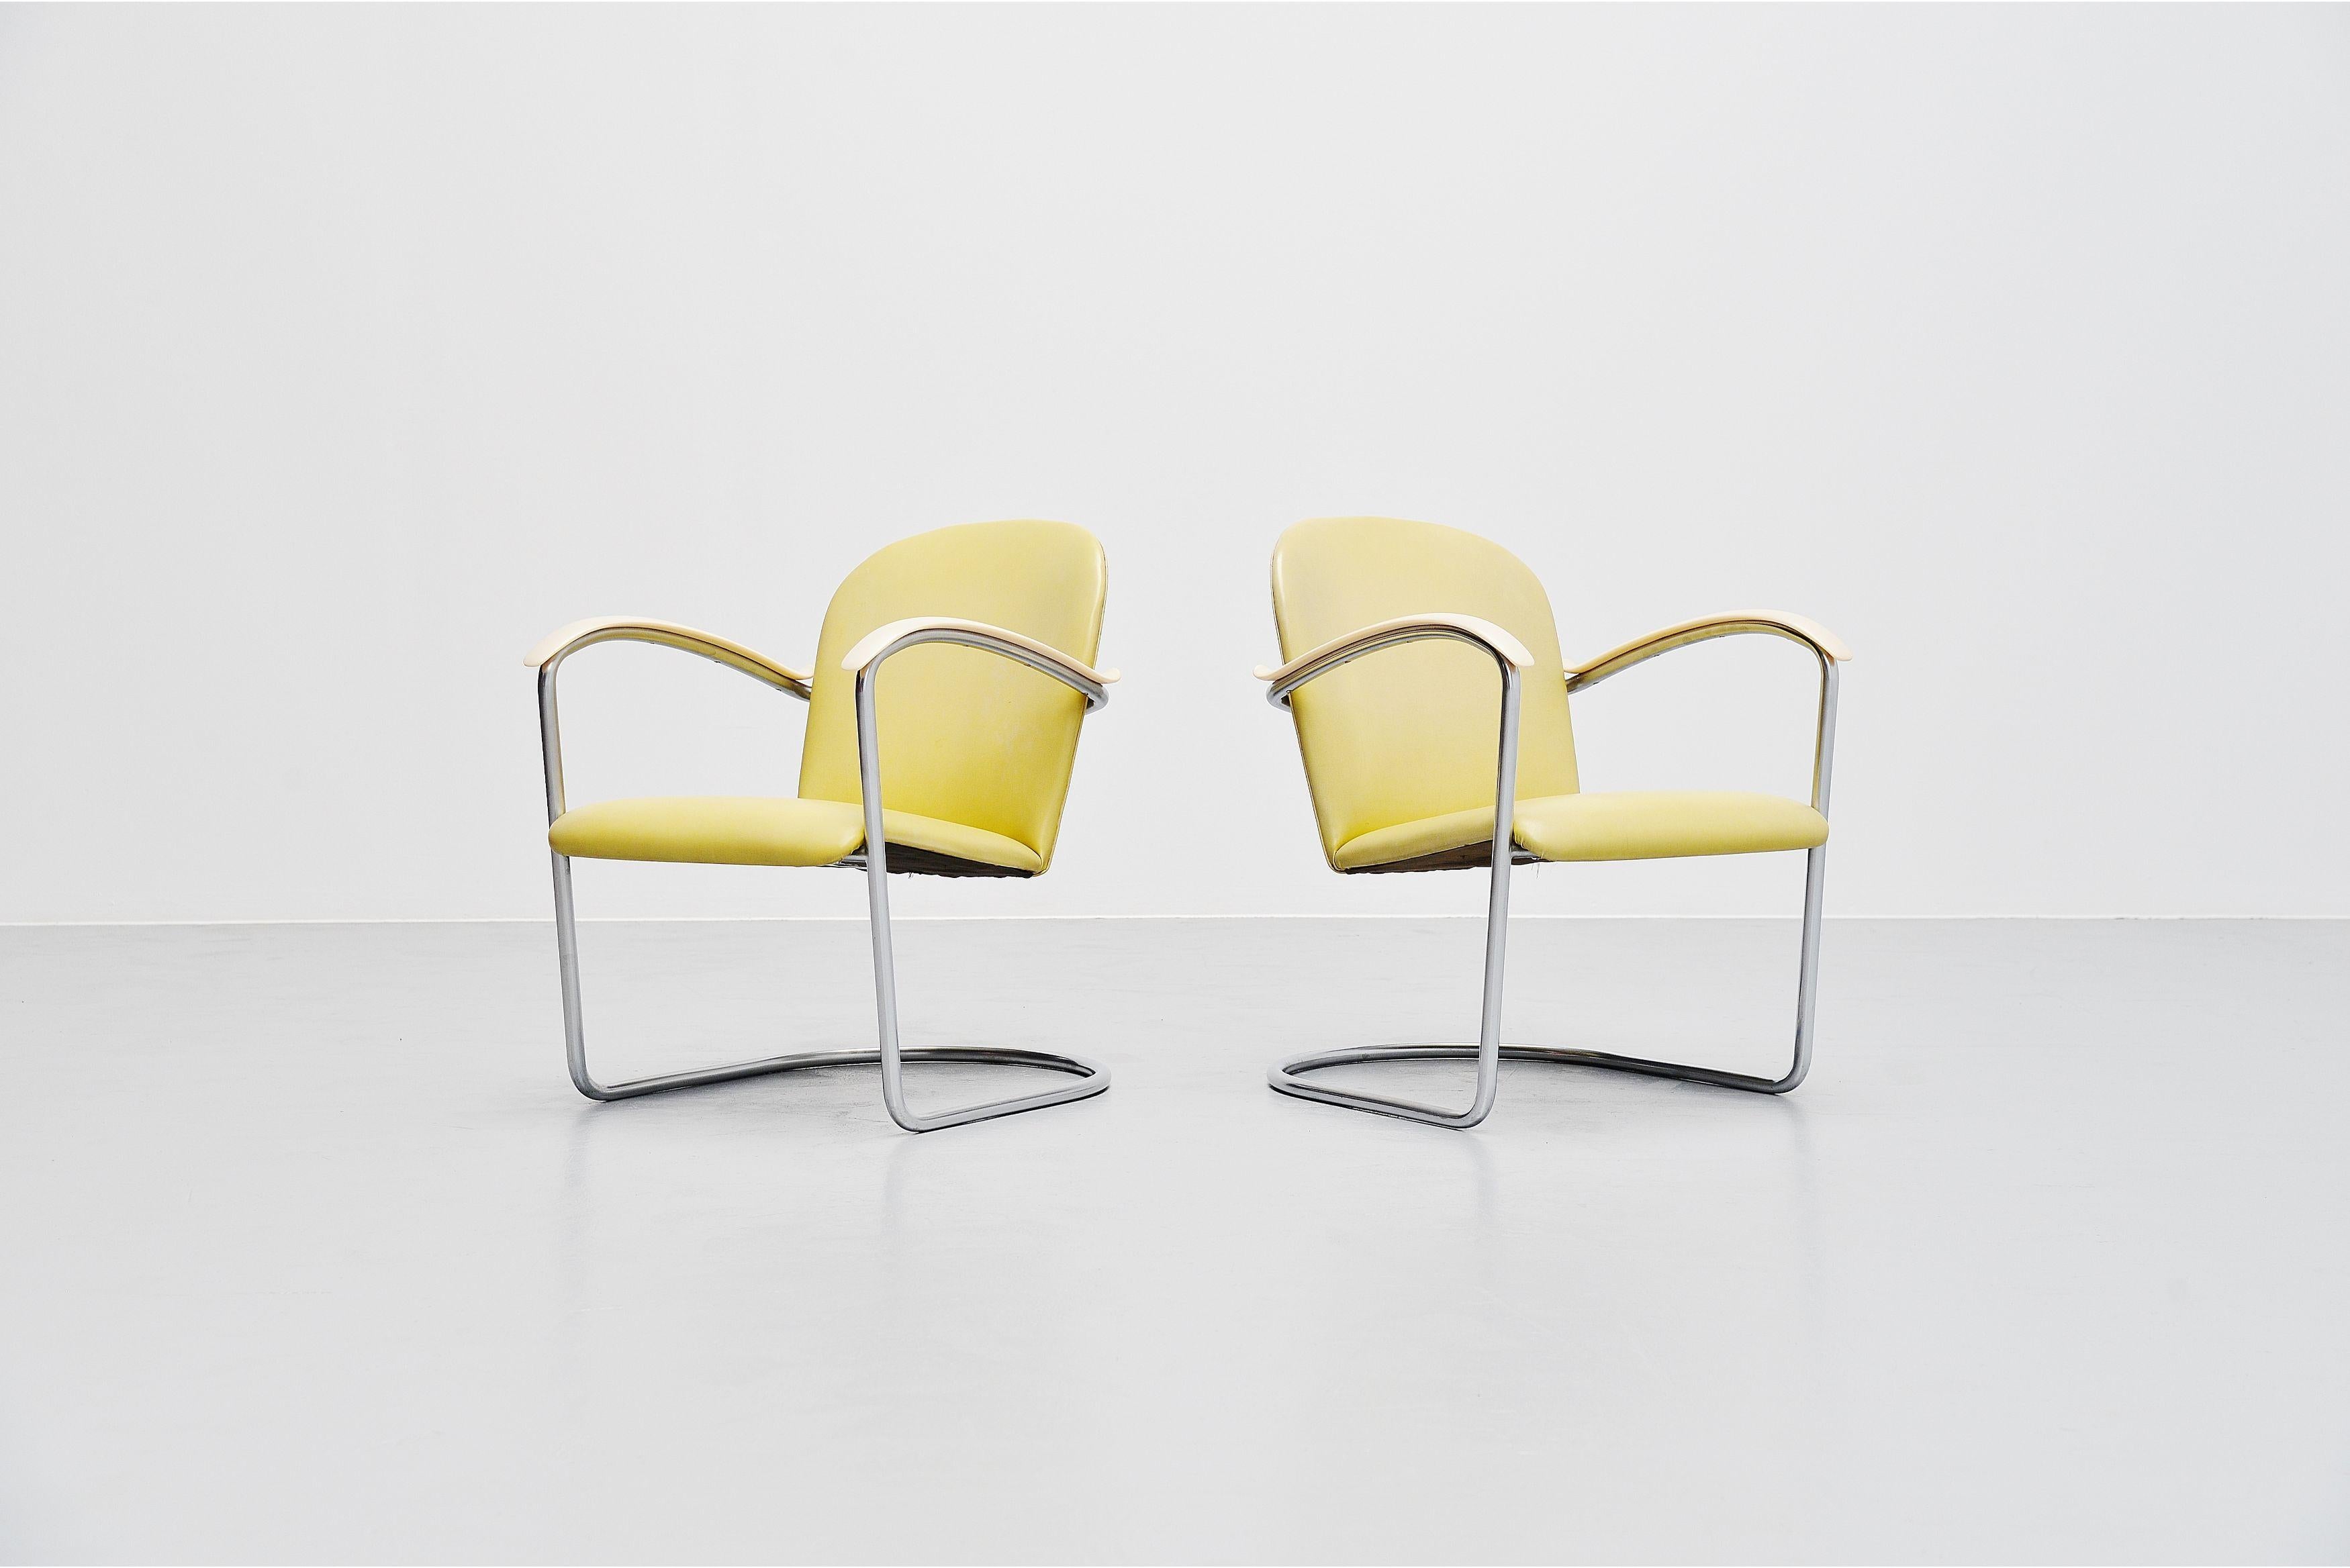 Très belle et rare paire de chaises longues conçue par WH Gispen pour Gispen, Hollande, 1937. Ces exemples spécifiques ont été fabriqués spécialement pour T.H. Delft en 1961. Ce sont les seuls exemplaires fabriqués avec des accoudoirs en bakélite